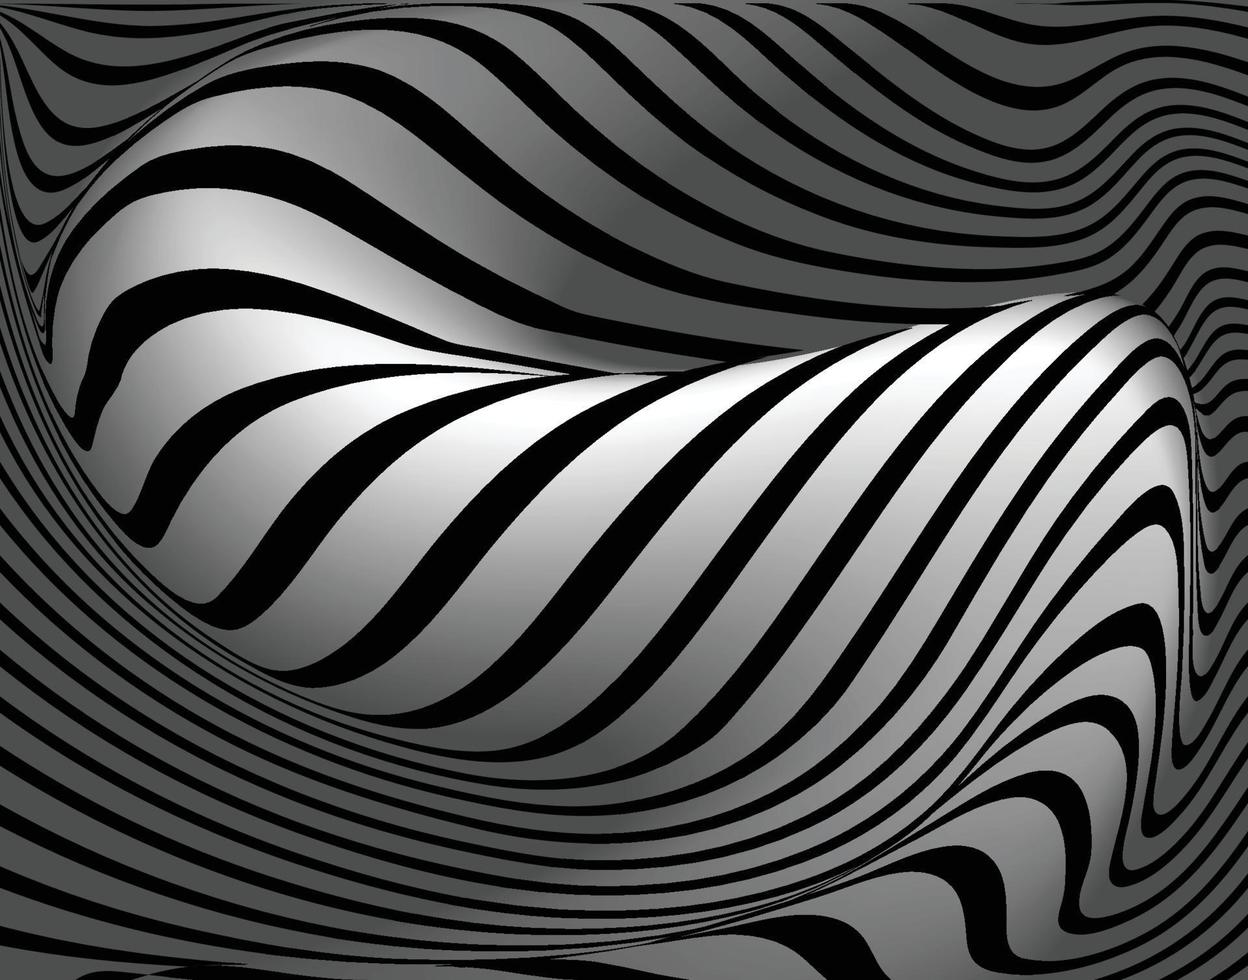  Schwarze Hintergrundbild 1248x980. das bewegte schwarze und graue Hintergrundbild 1937830 Vektor Kunst bei Vecteezy